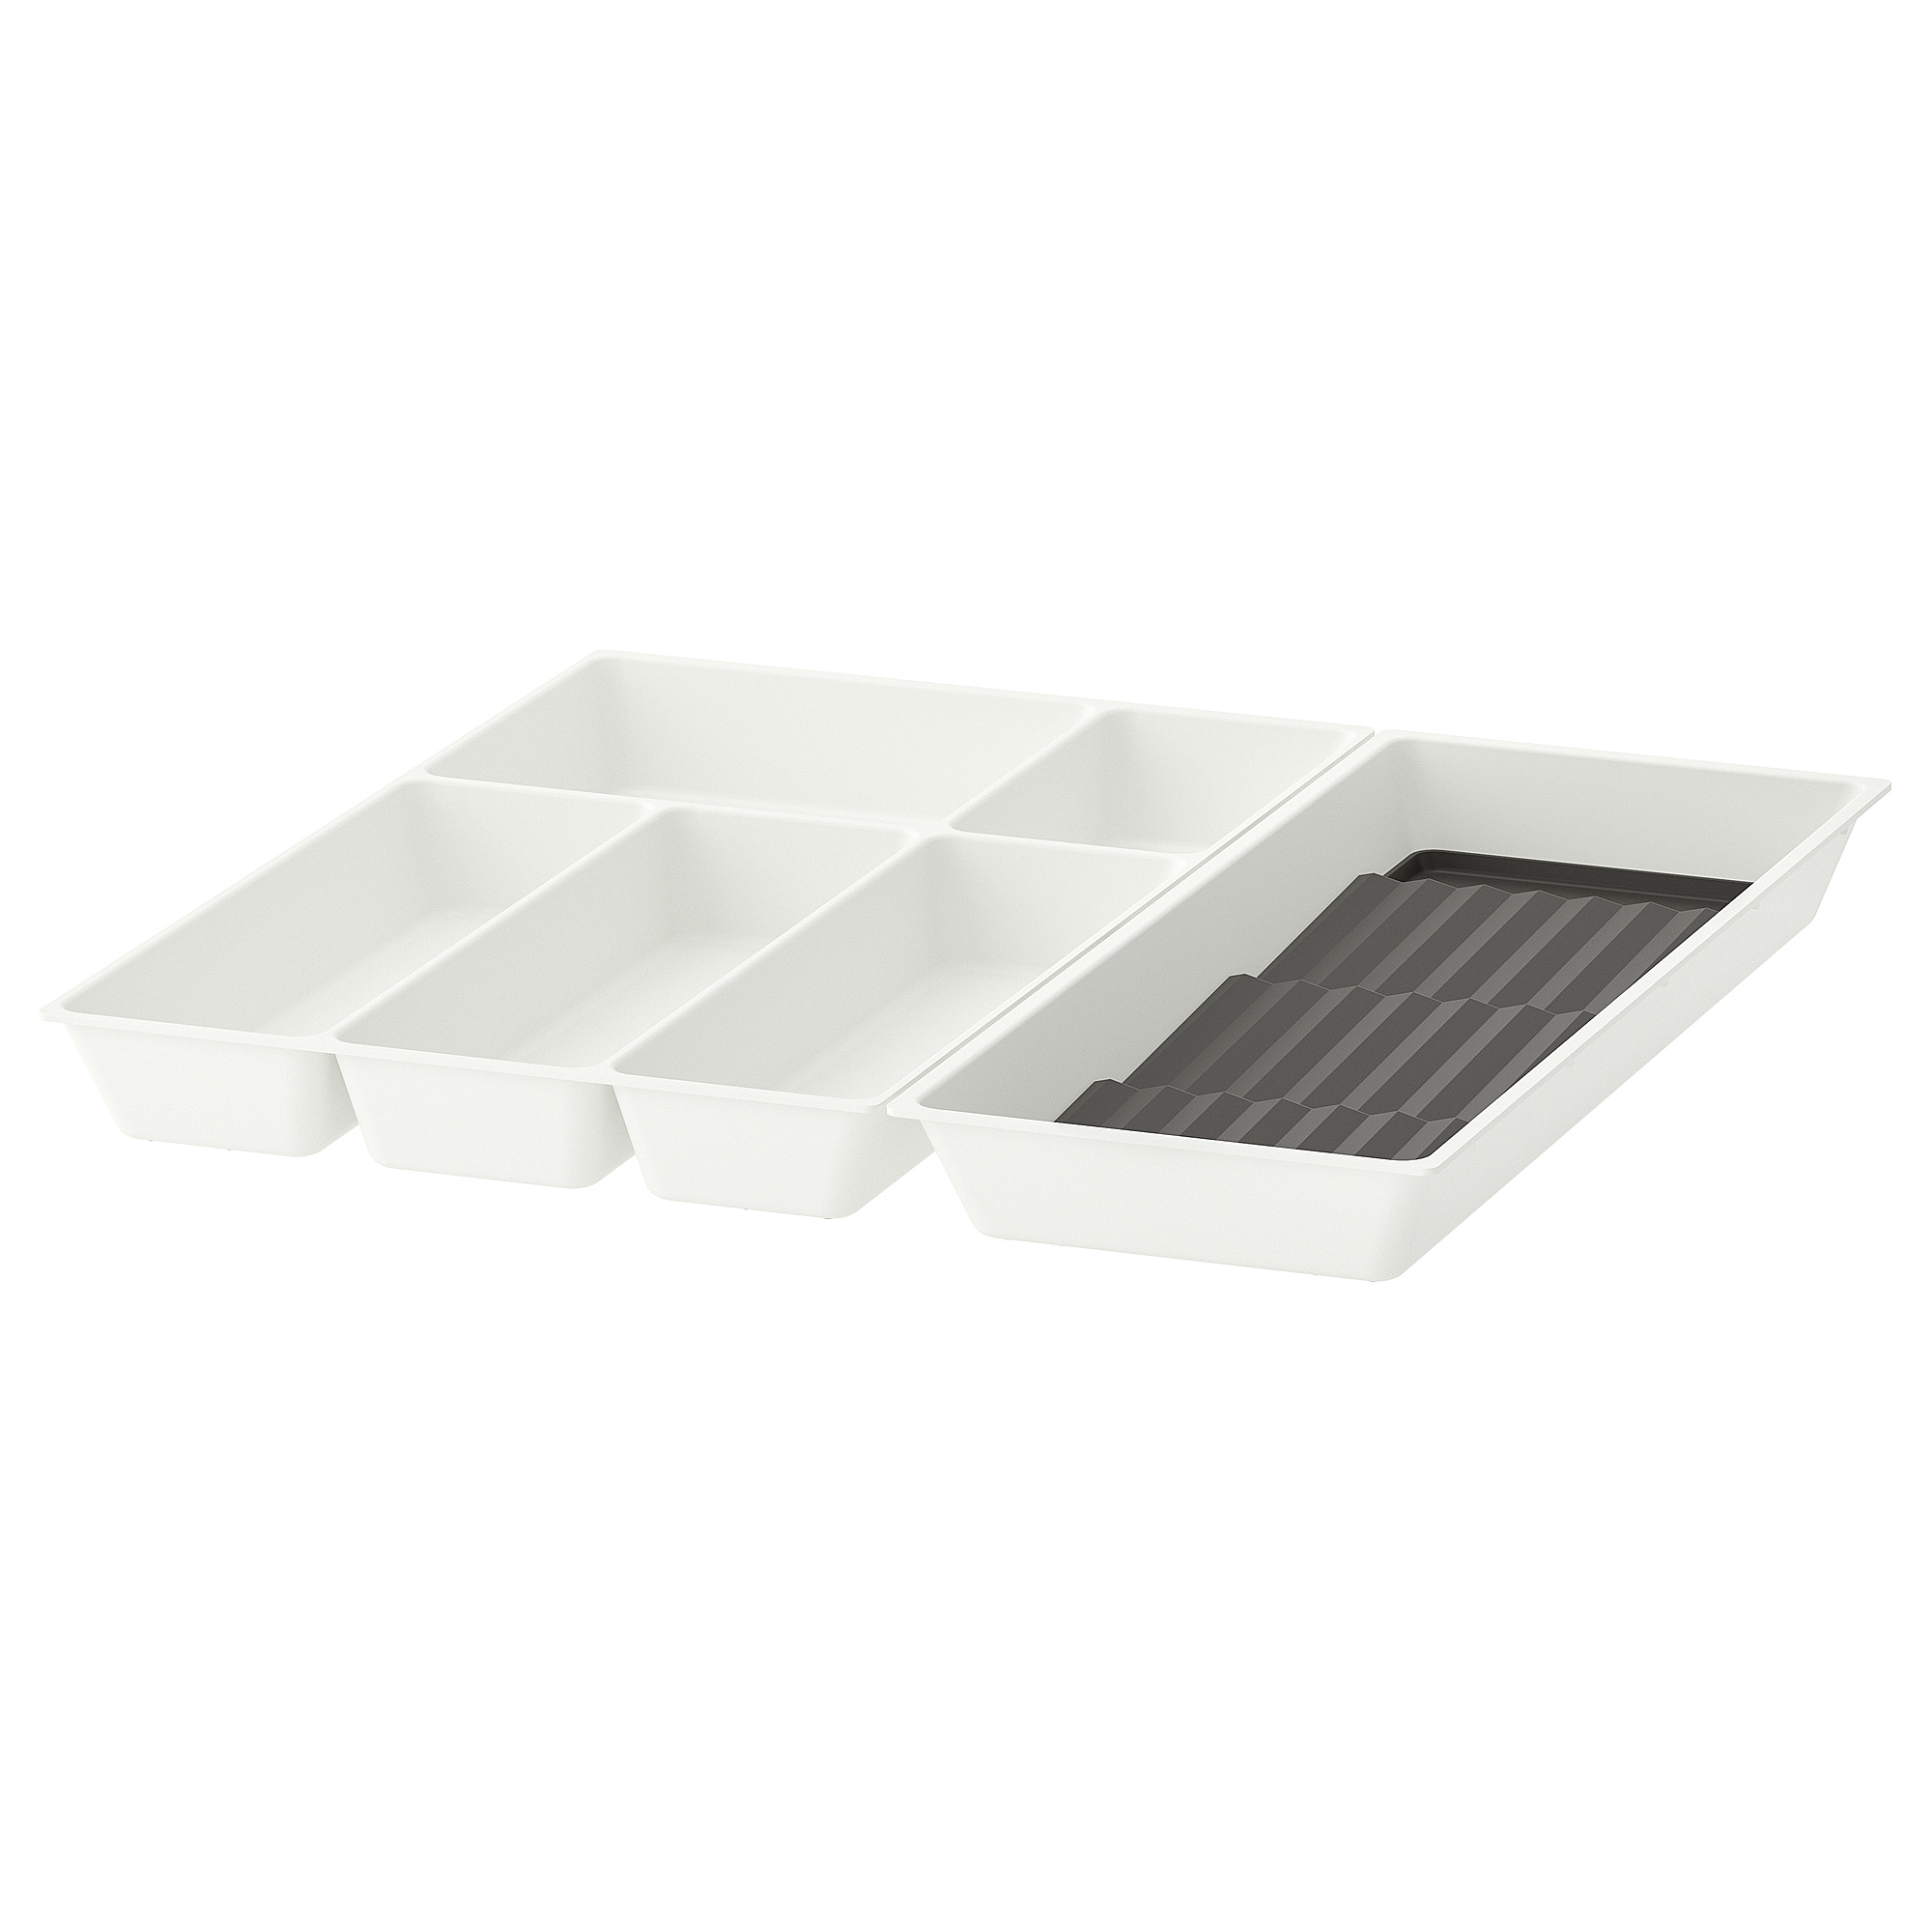 UPPDATERA cutlery tray/tray with spice rack